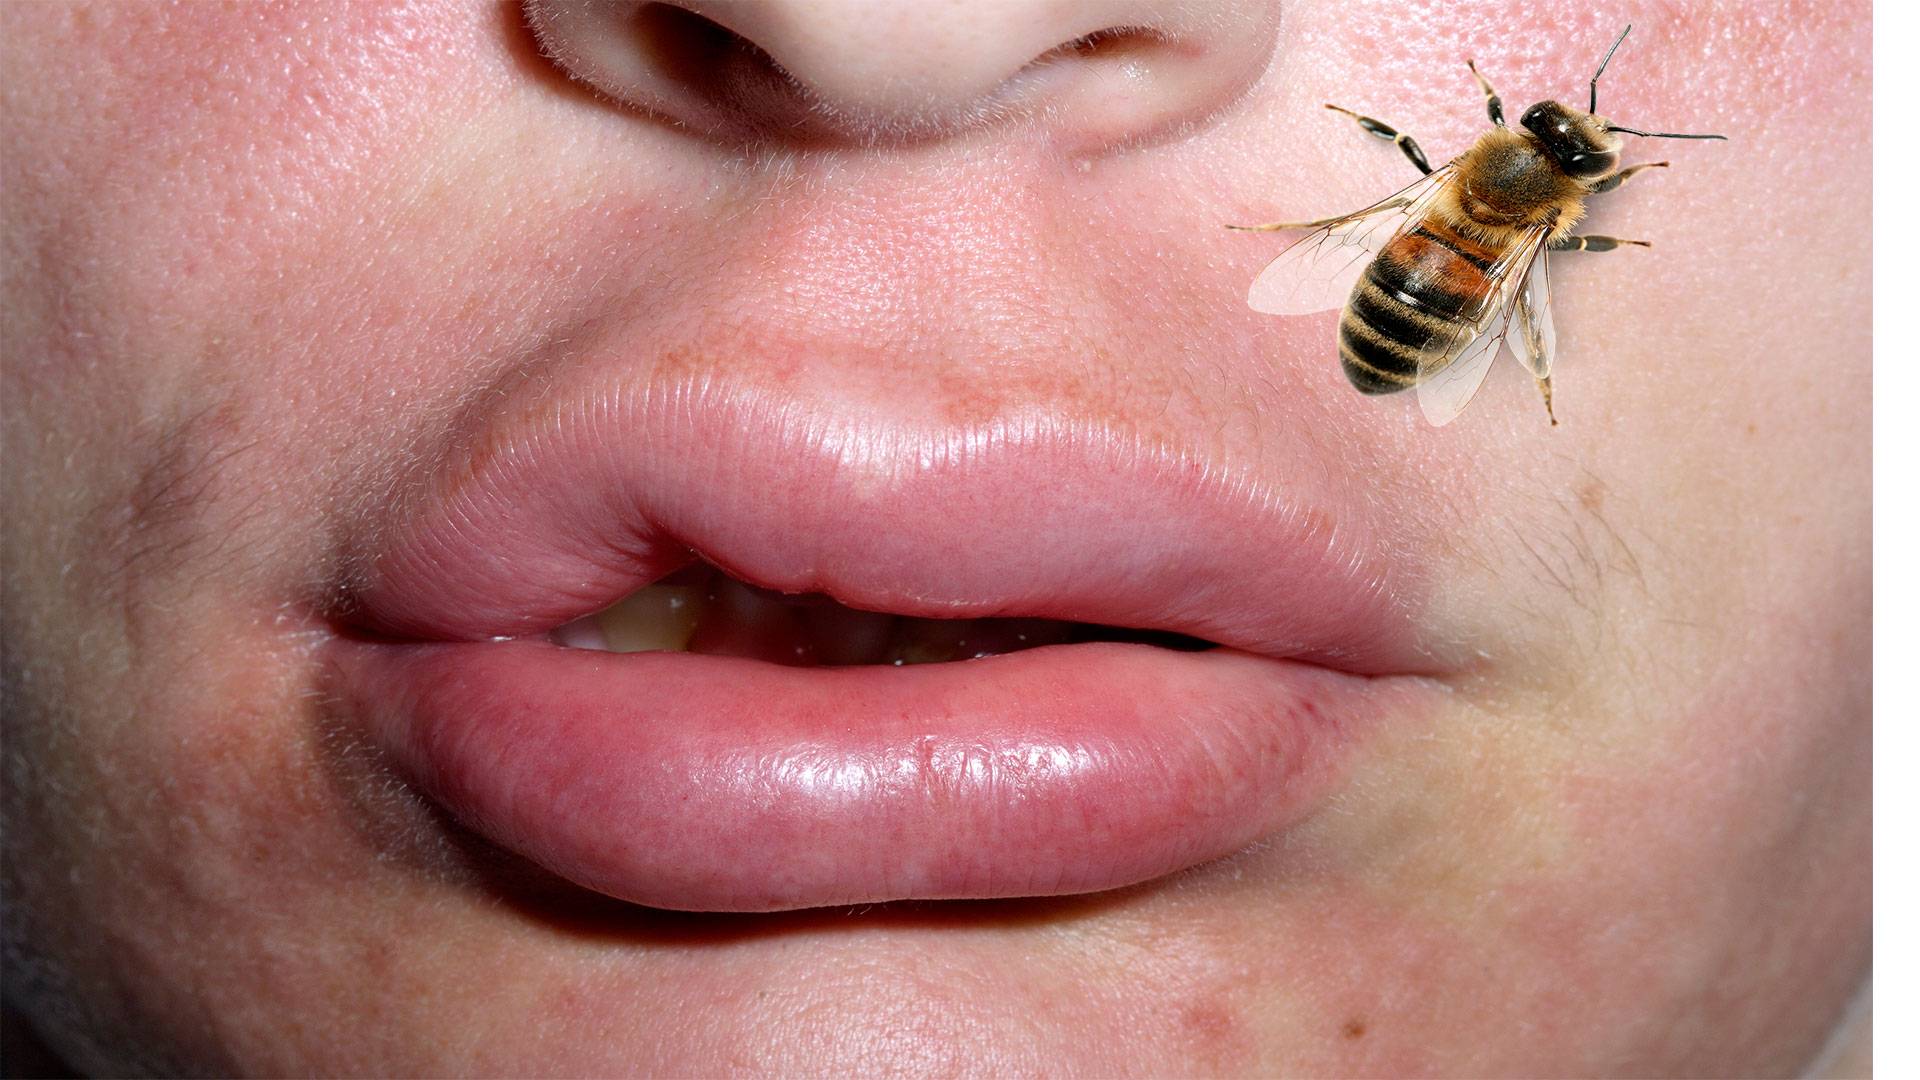 Как и чем снять отек при укусе пчелы: первая помощь